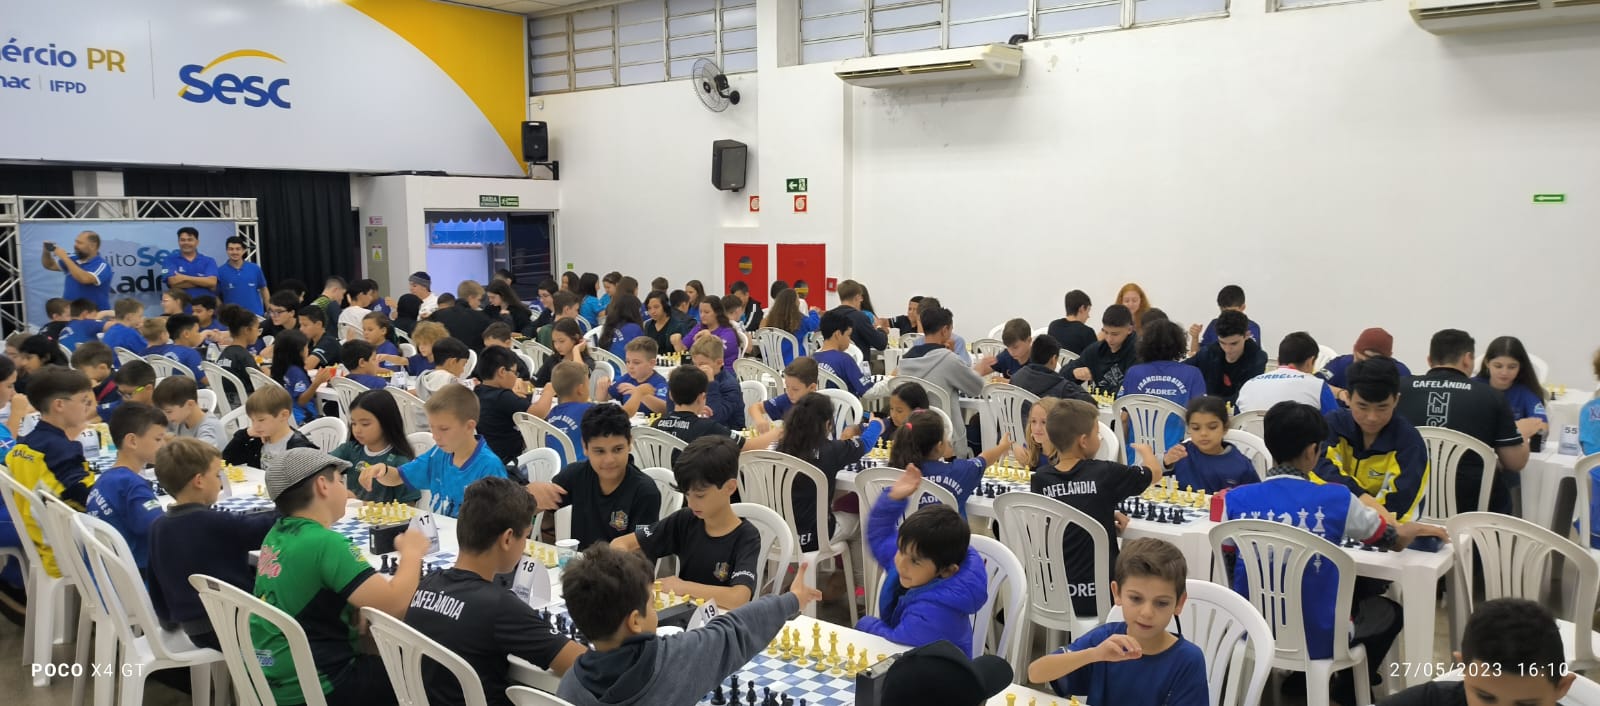 Circuito Sesc de Xadrez está com inscrições abertas para etapa de Ivaiporã